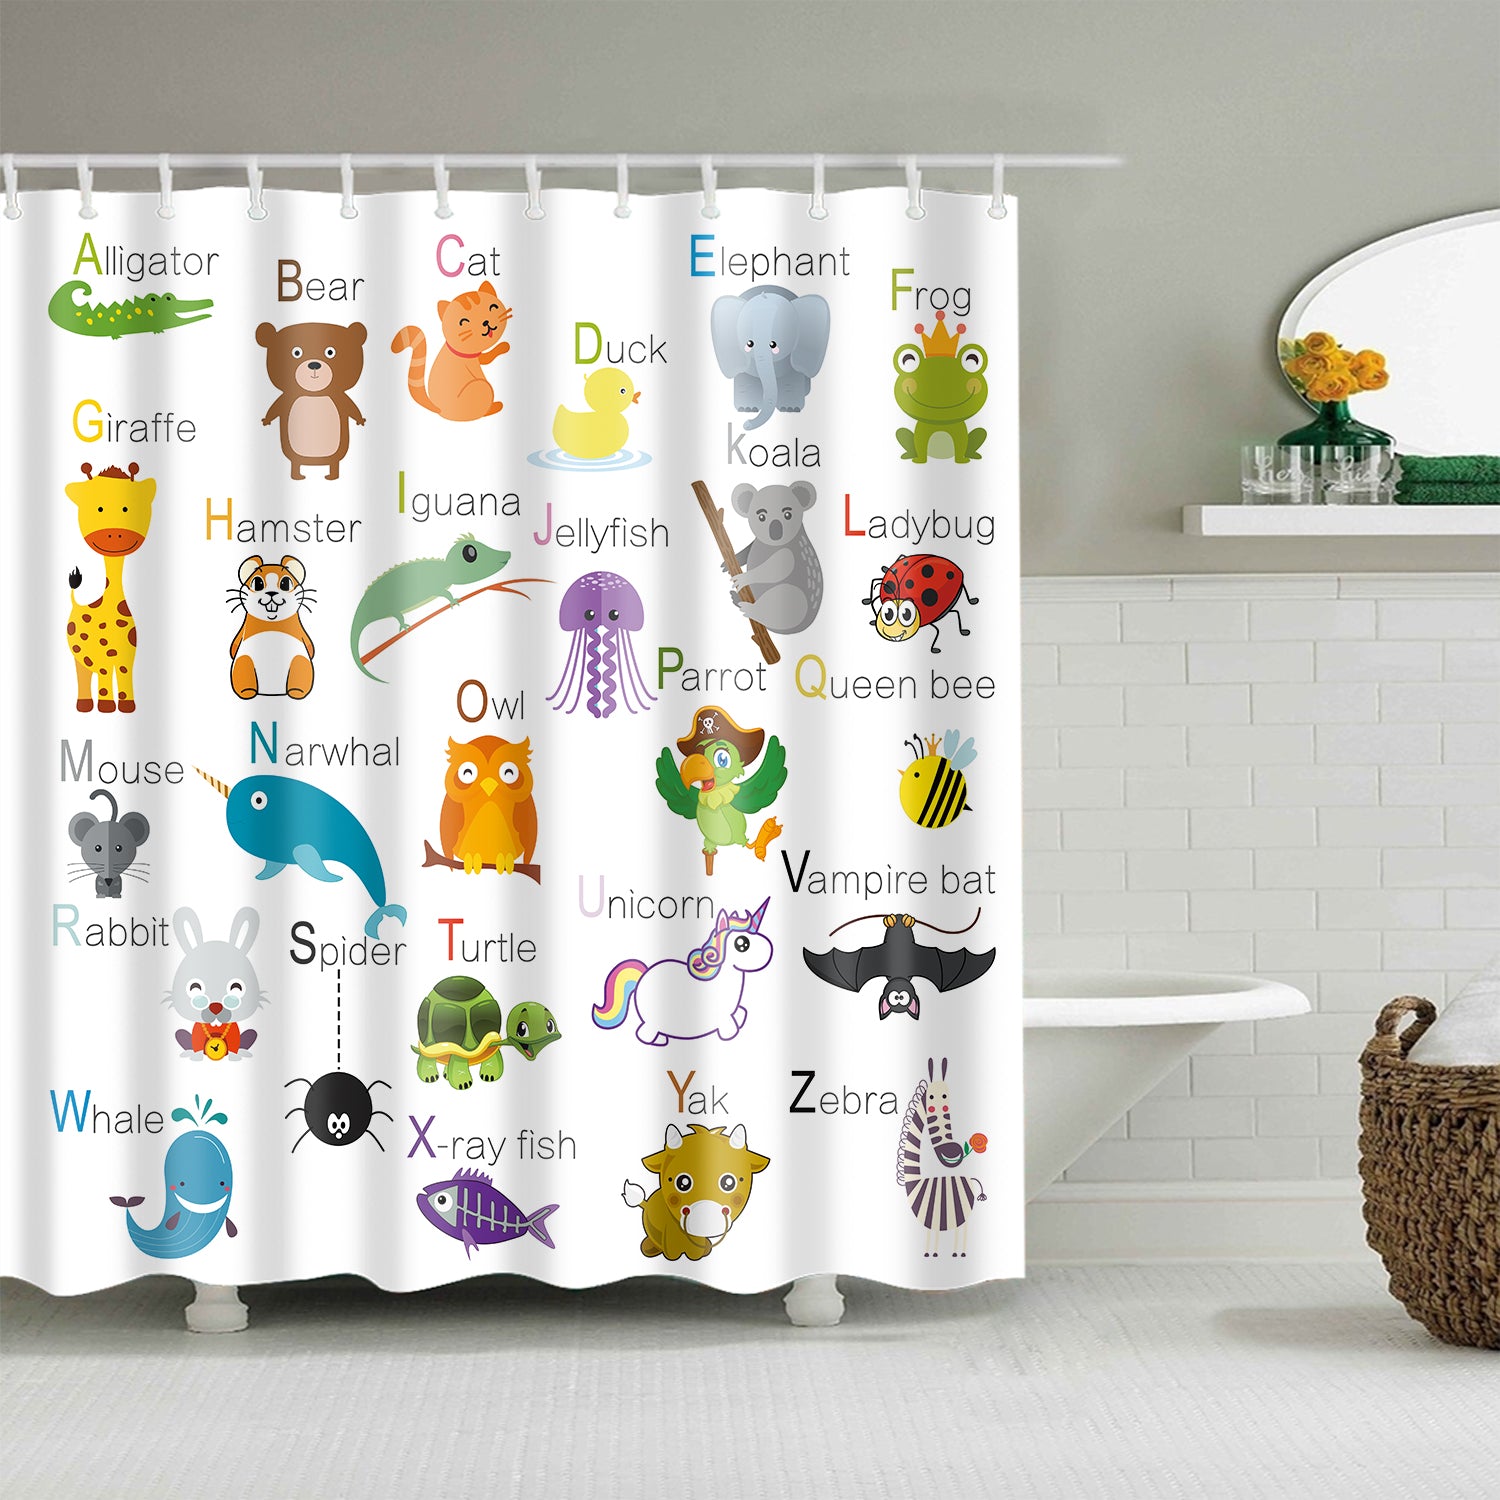 ABC Alphabet with Cartoon Animal Educational Shower Curtains